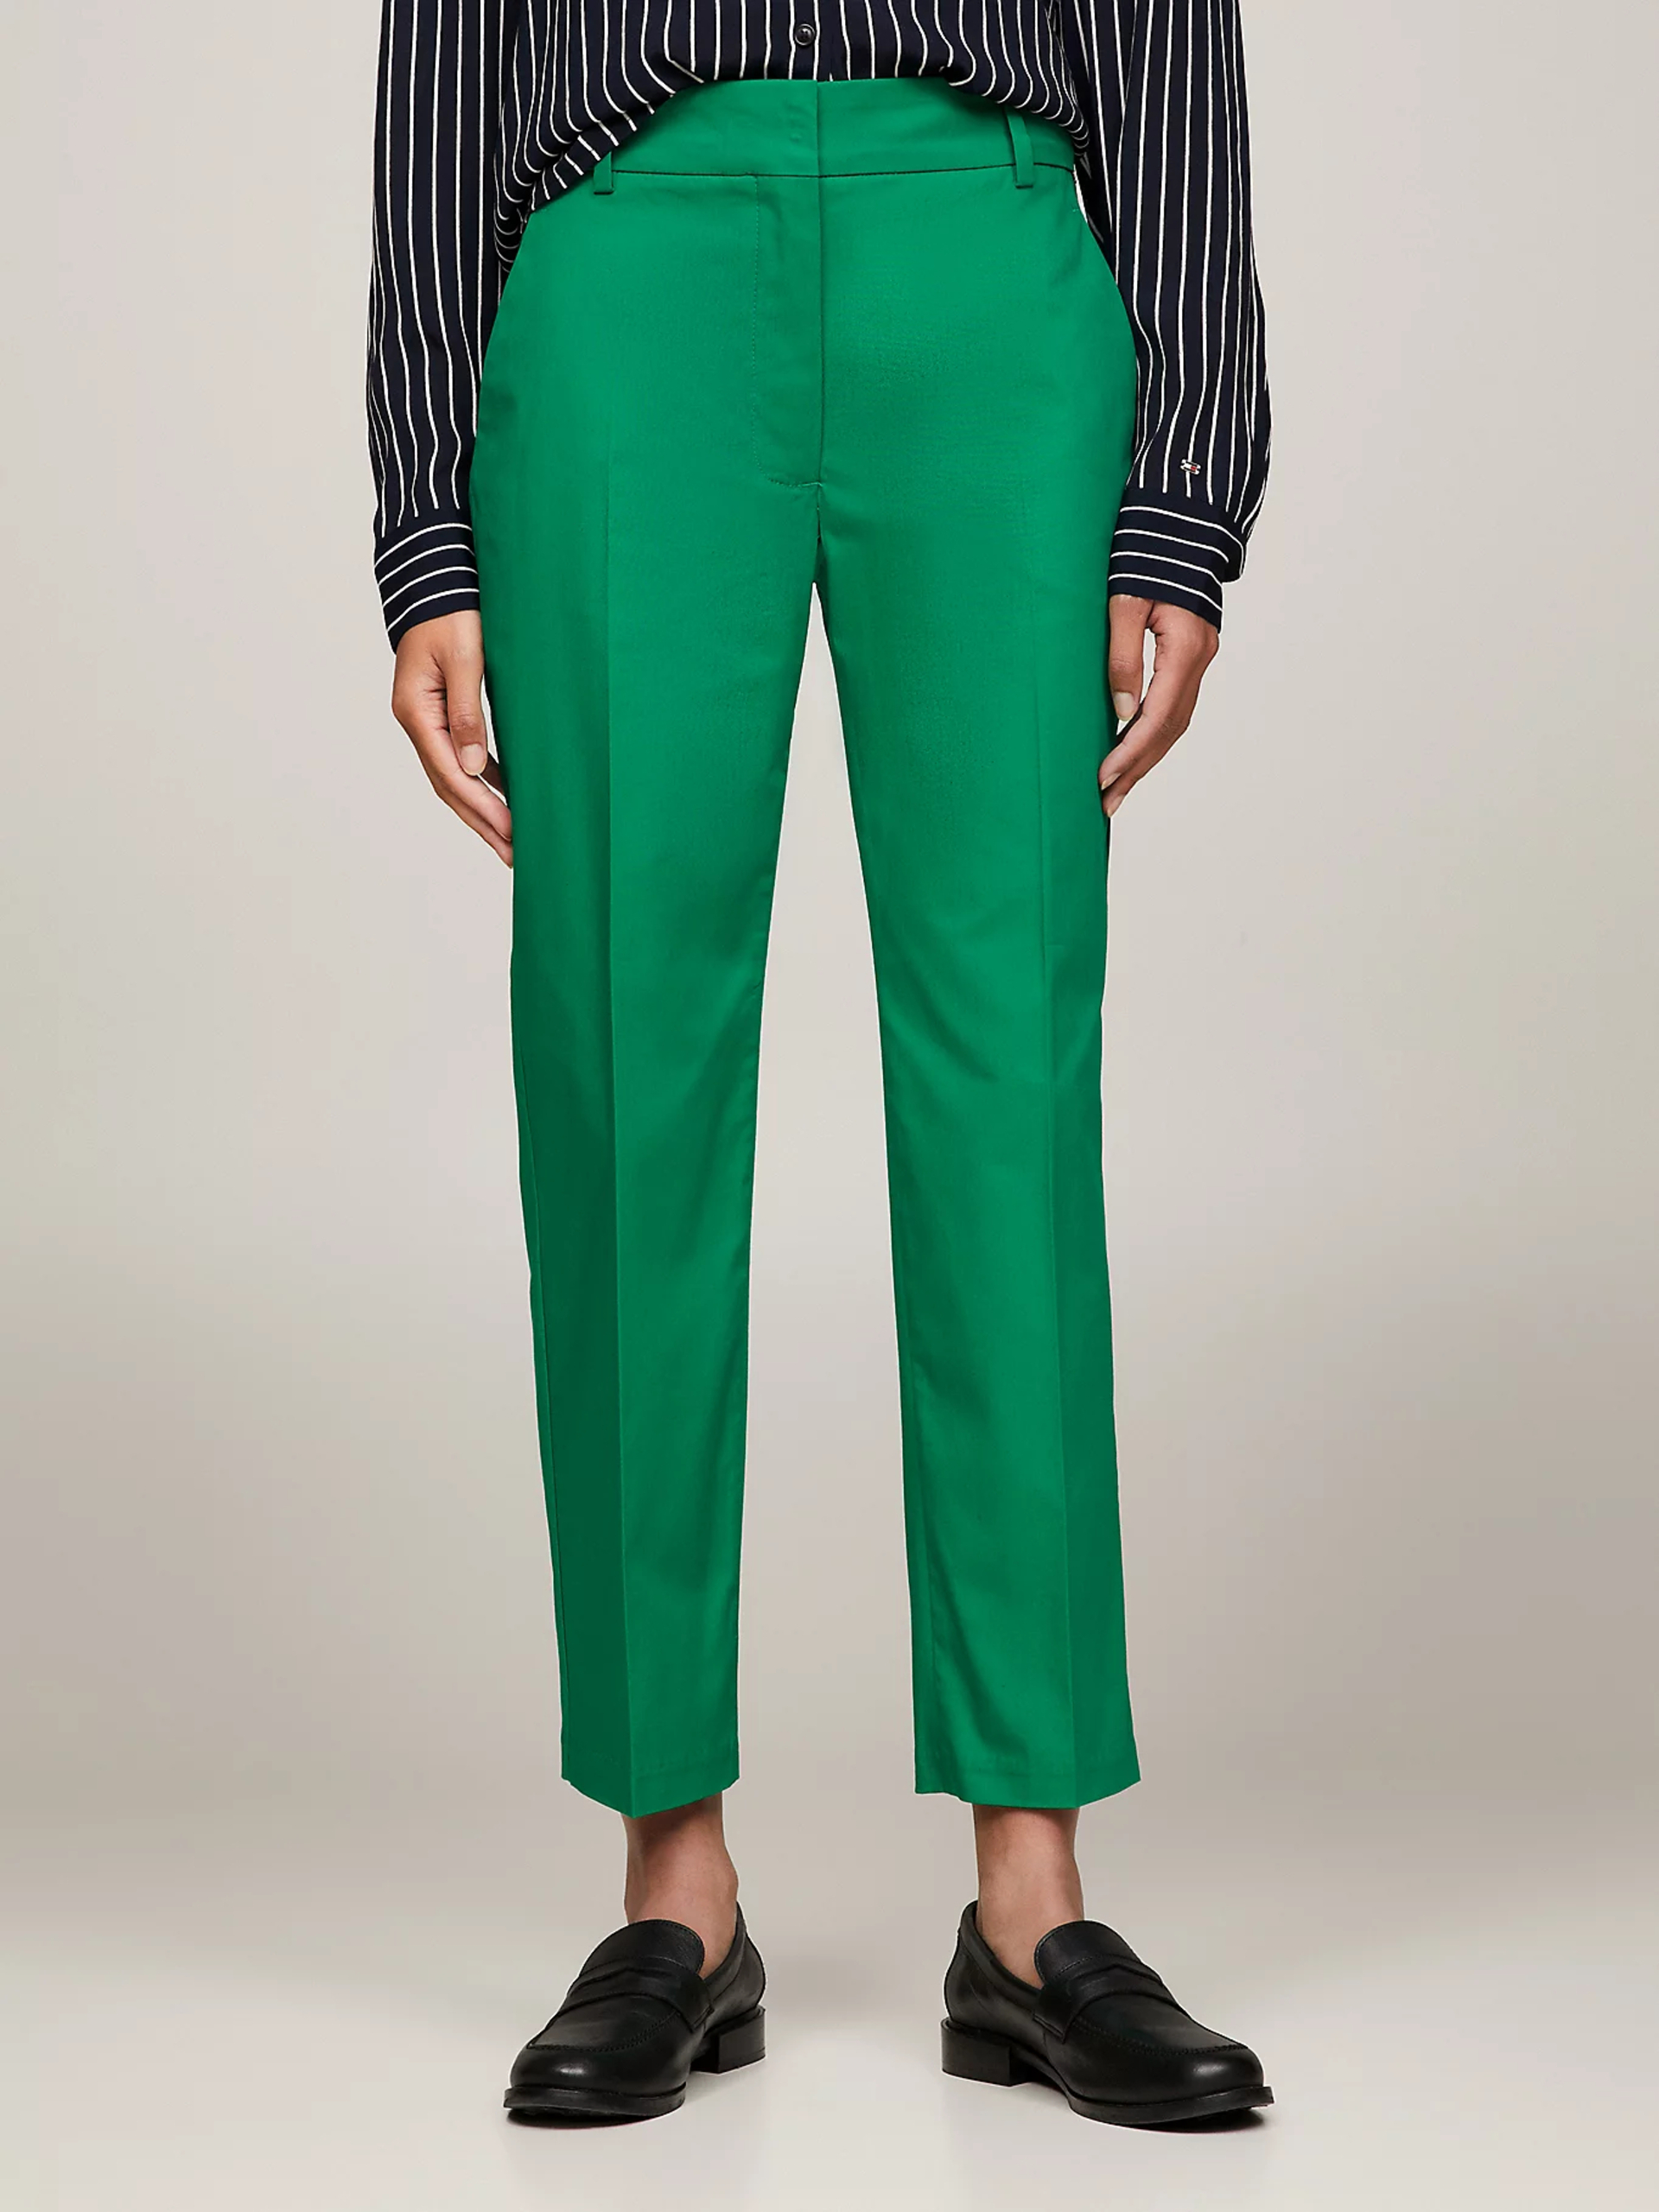 Tommy Hilfiger dámské zelené Chinos kalhoty - 42 (L4B)